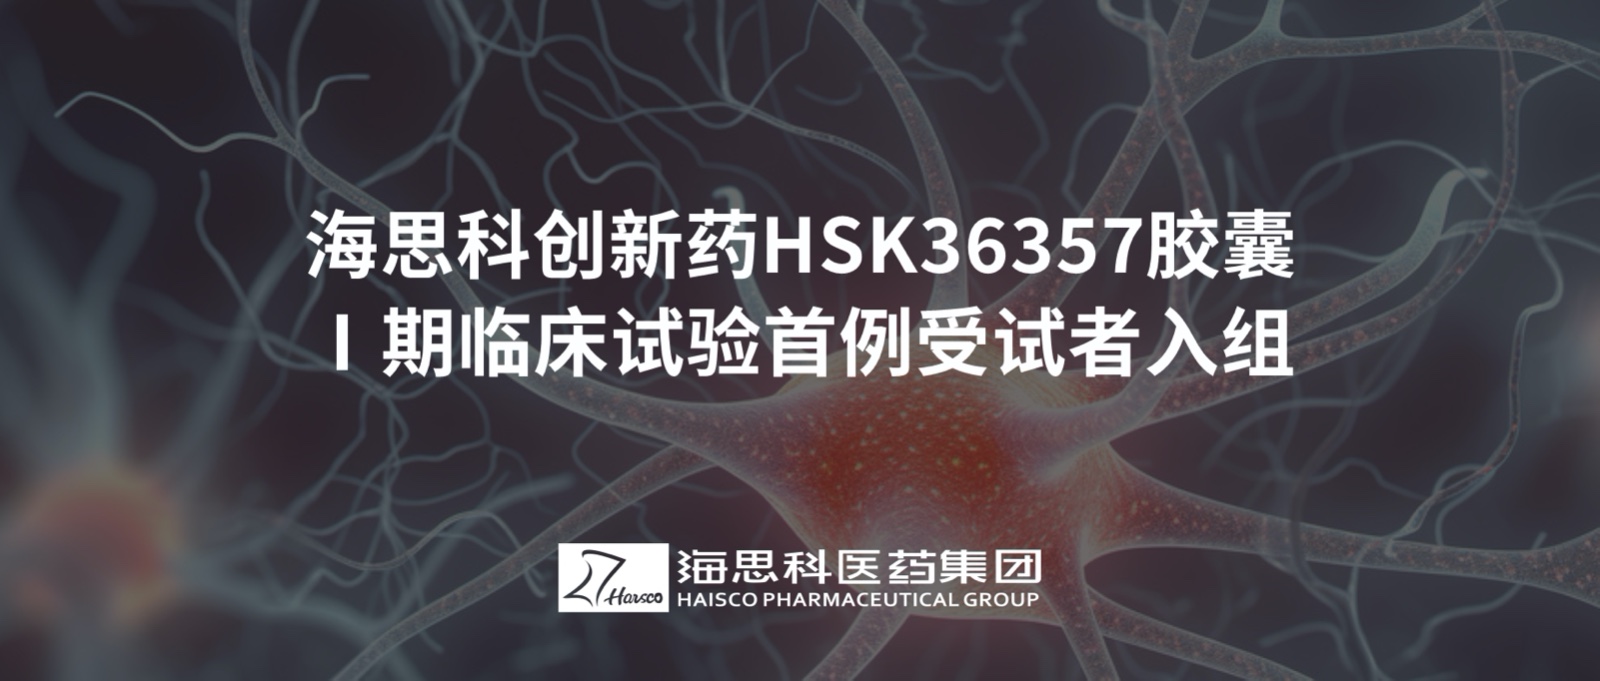 云顶国际创新药HSK36357胶囊Ⅰ期临床试验首例受试者入组